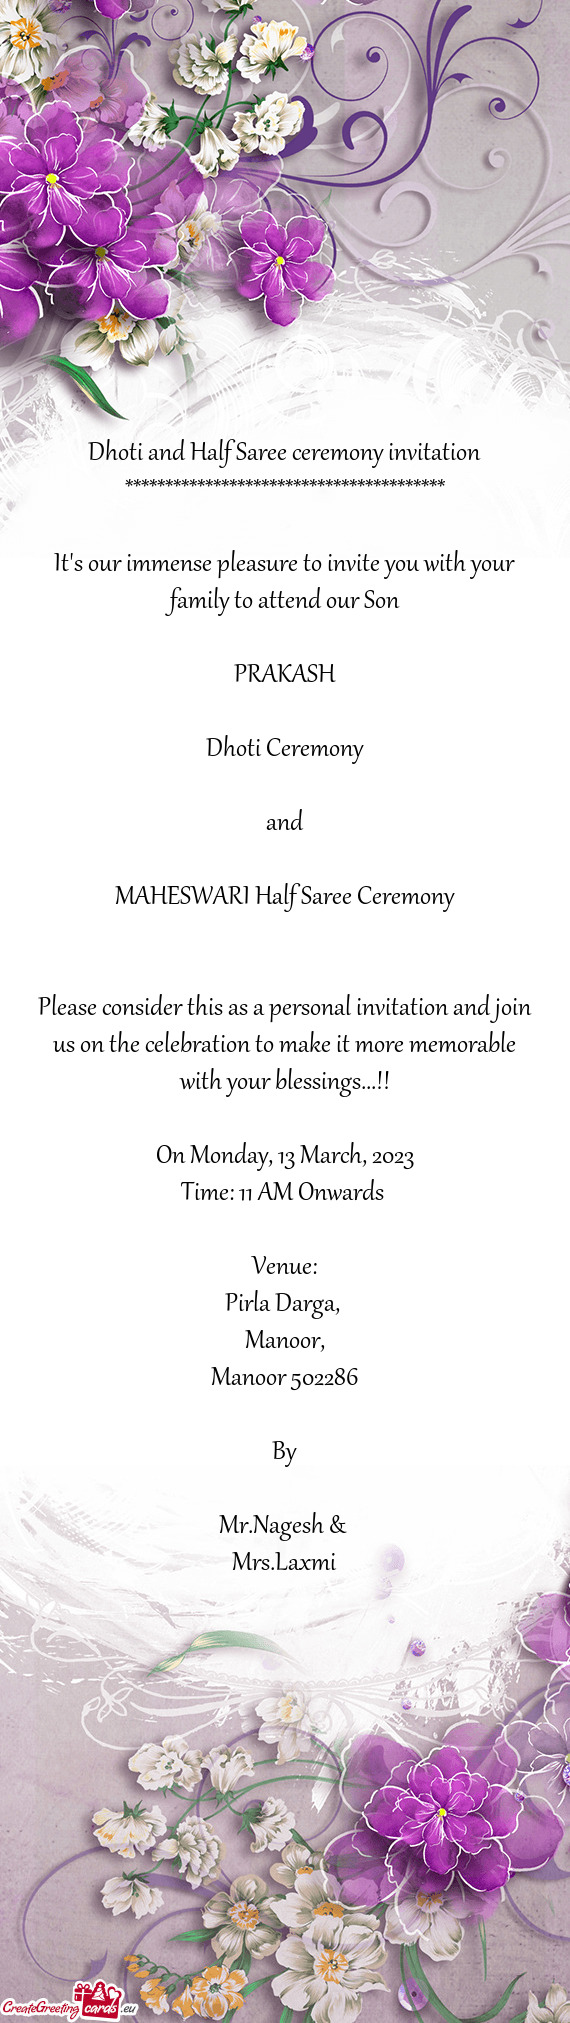 MAHESWARI Half Saree Ceremony